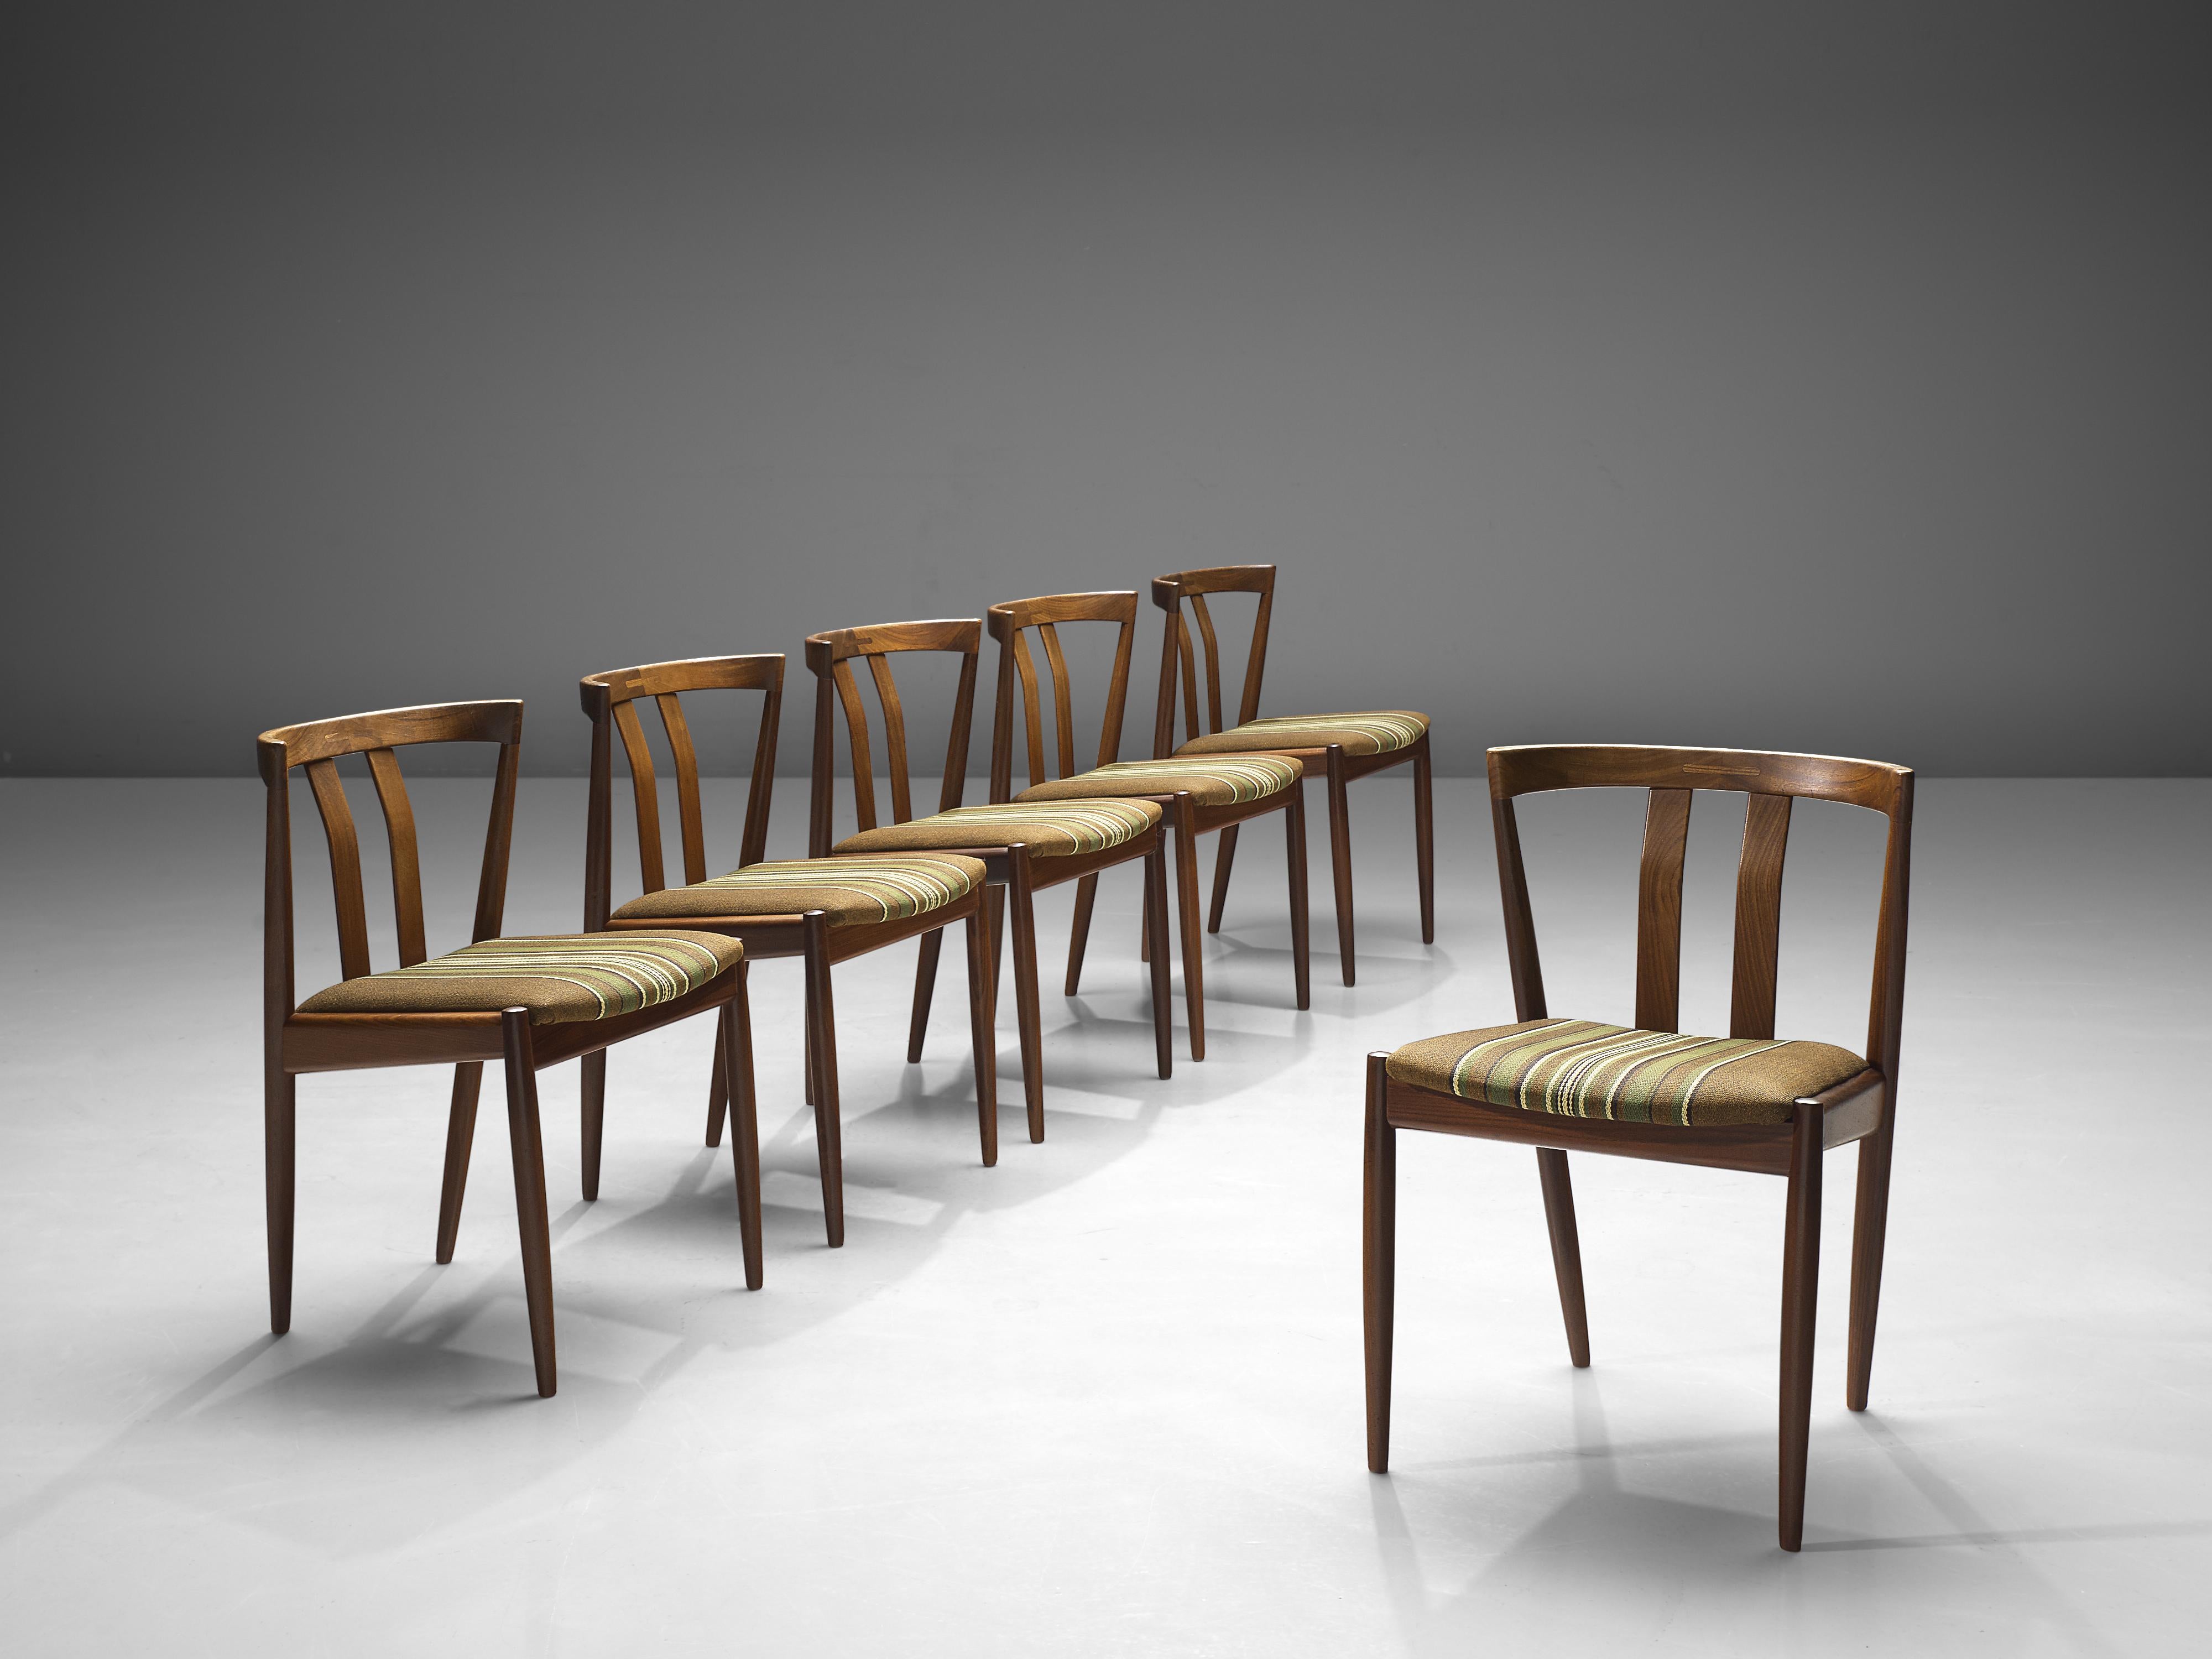 Satz von sechs Esszimmerstühlen, Teak und Wolle, Dänemark, 1960er Jahre

Elegantes Set aus sechs dänischen Esszimmerstühlen mit offener Rückenlehne mit zwei Latten und diagonalen Rückenbeinen, die bis zur Rückenlehne durchlaufen. Dieses Set ist